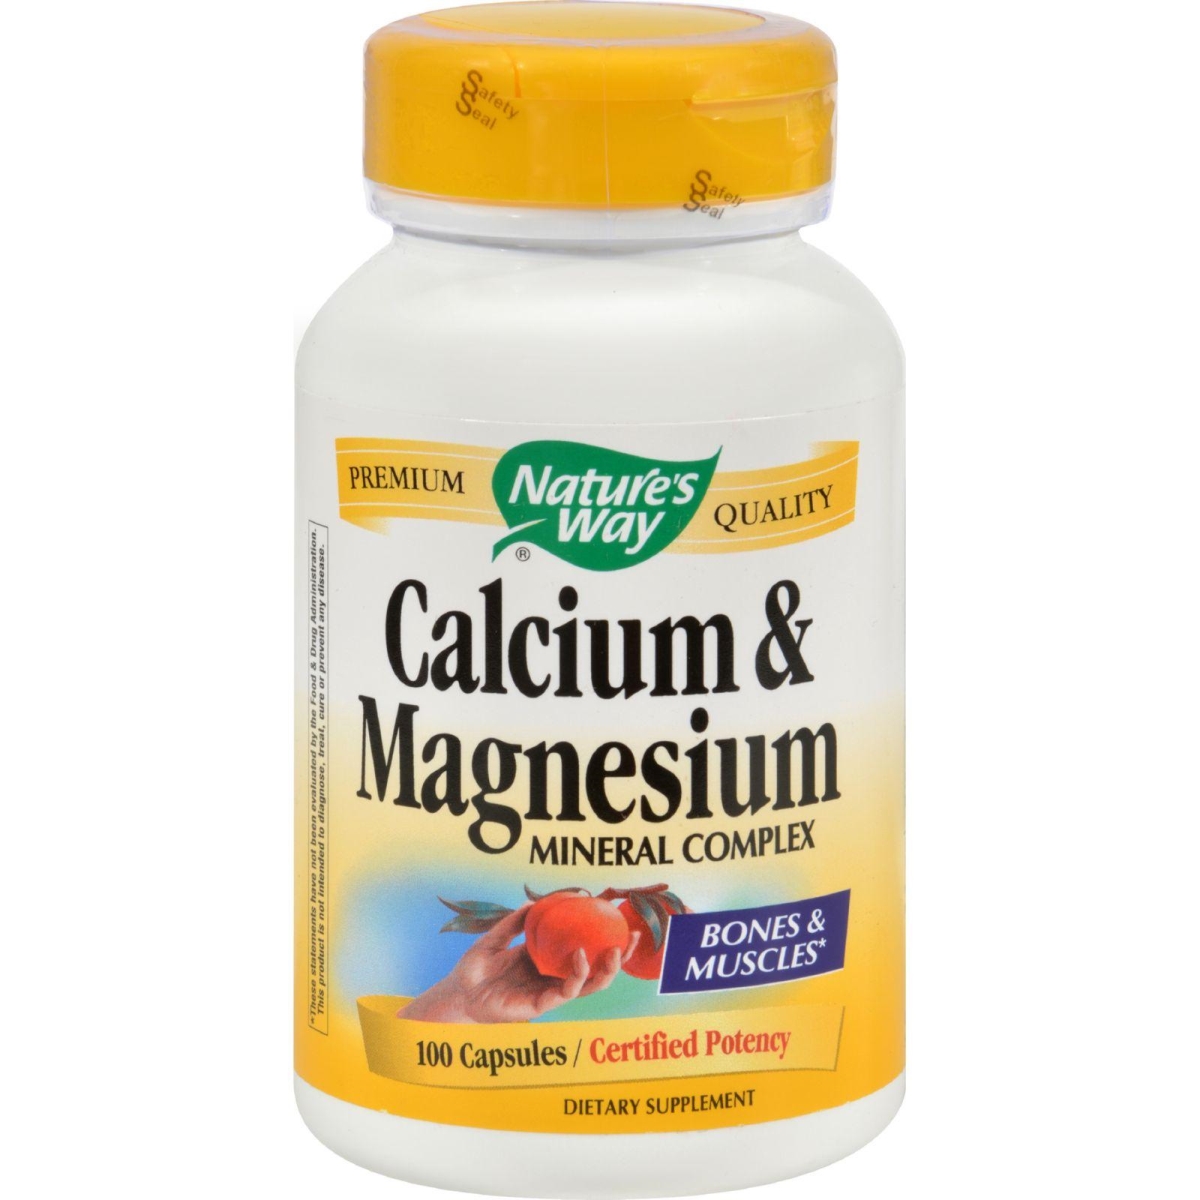 Hg0816322 Calcium & Magnesium Mineral Complex - 100 Capsules